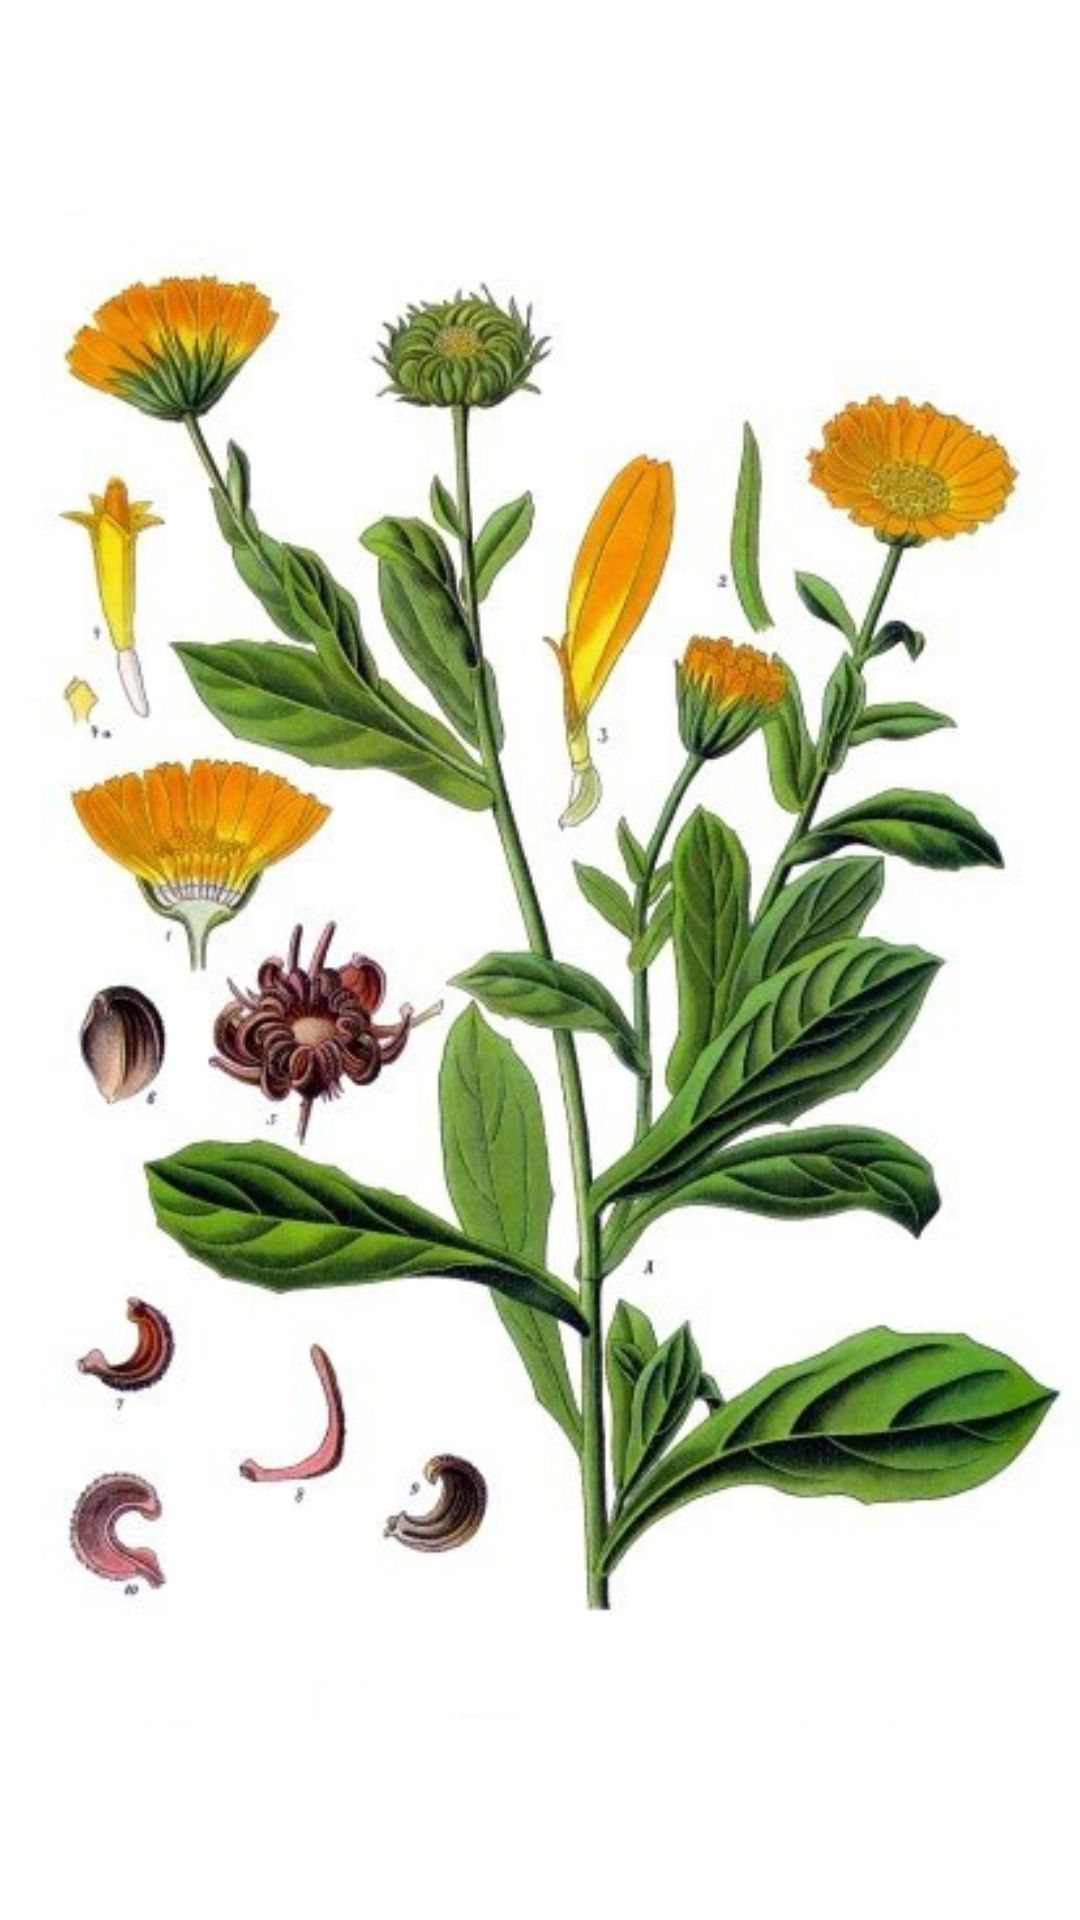 Die Ringelblume, ein sonniger Gartenliebling, bietet farbenfrohe Blüten und vielfältige Verwendungsmöglichkeiten in Küche, Gesundheit und Pflege.